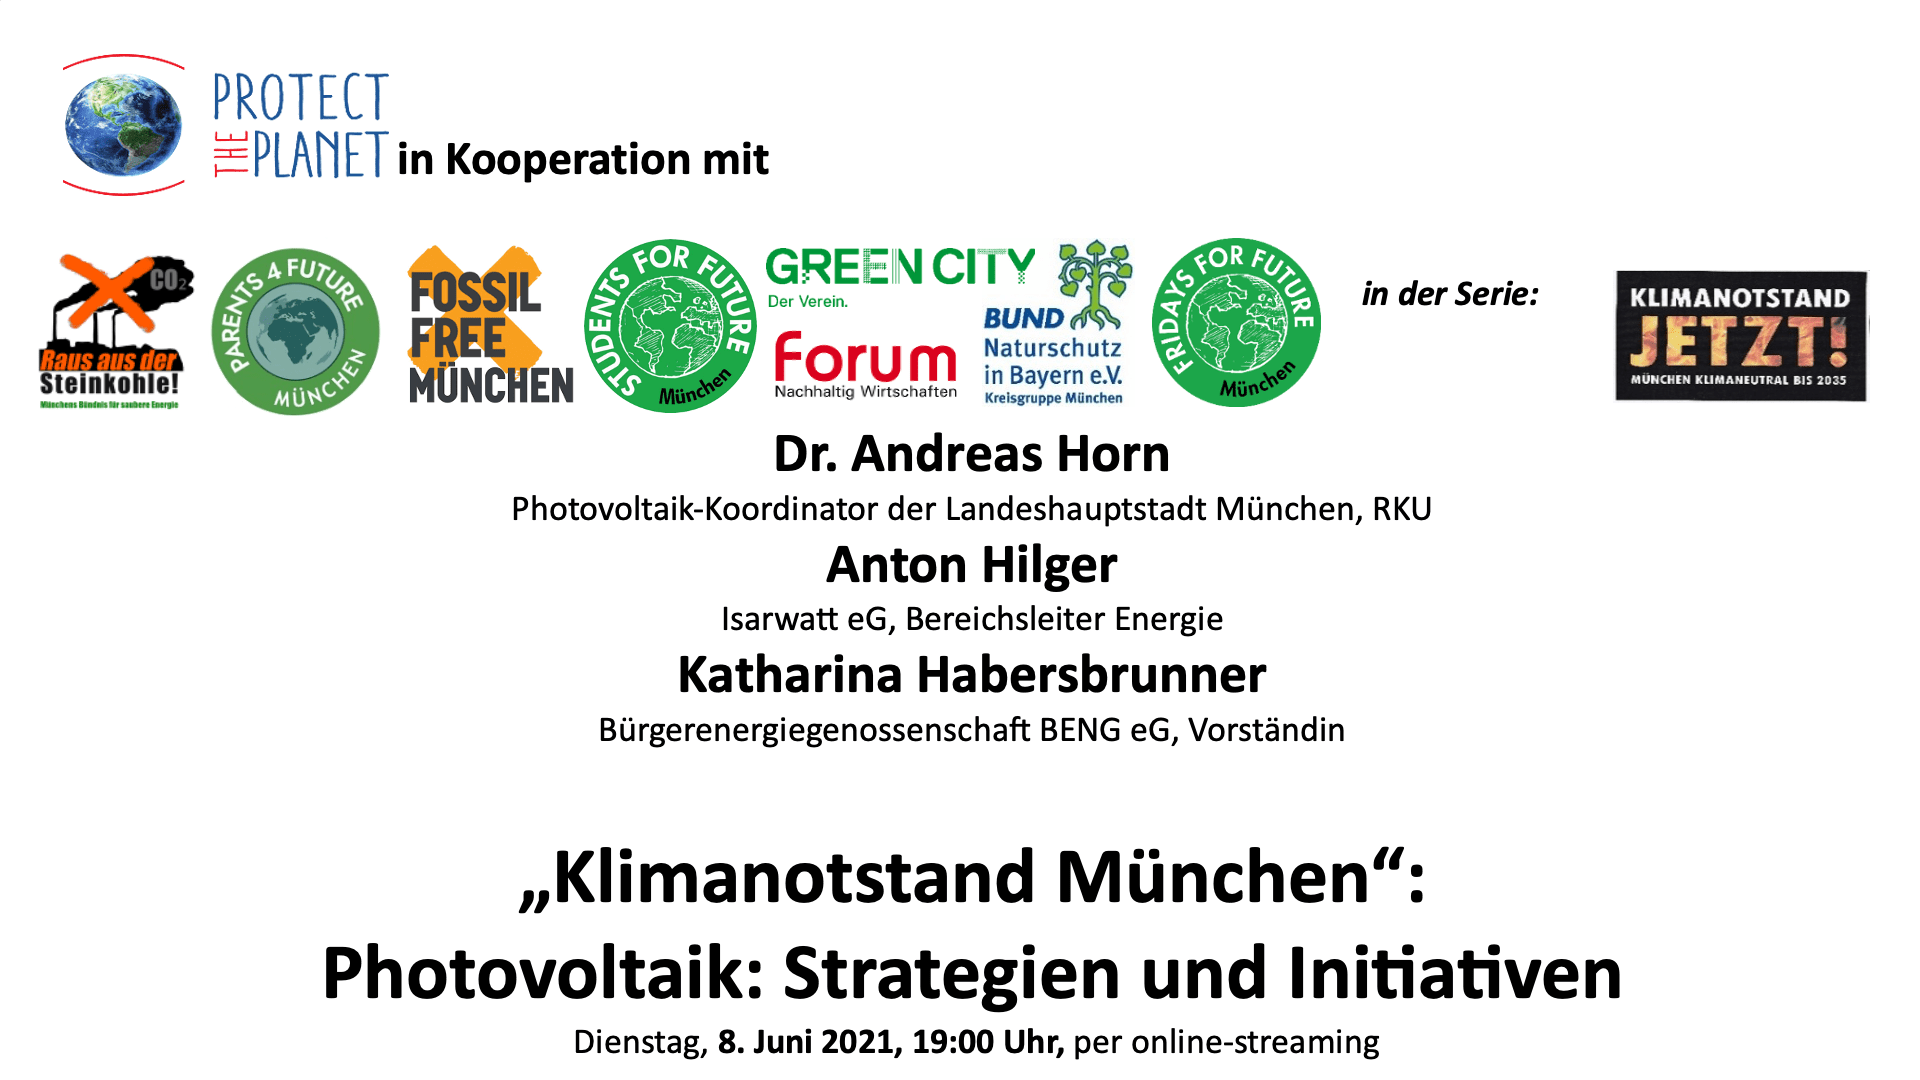 21/06/08 Vortrag Klimanotstand München: PV